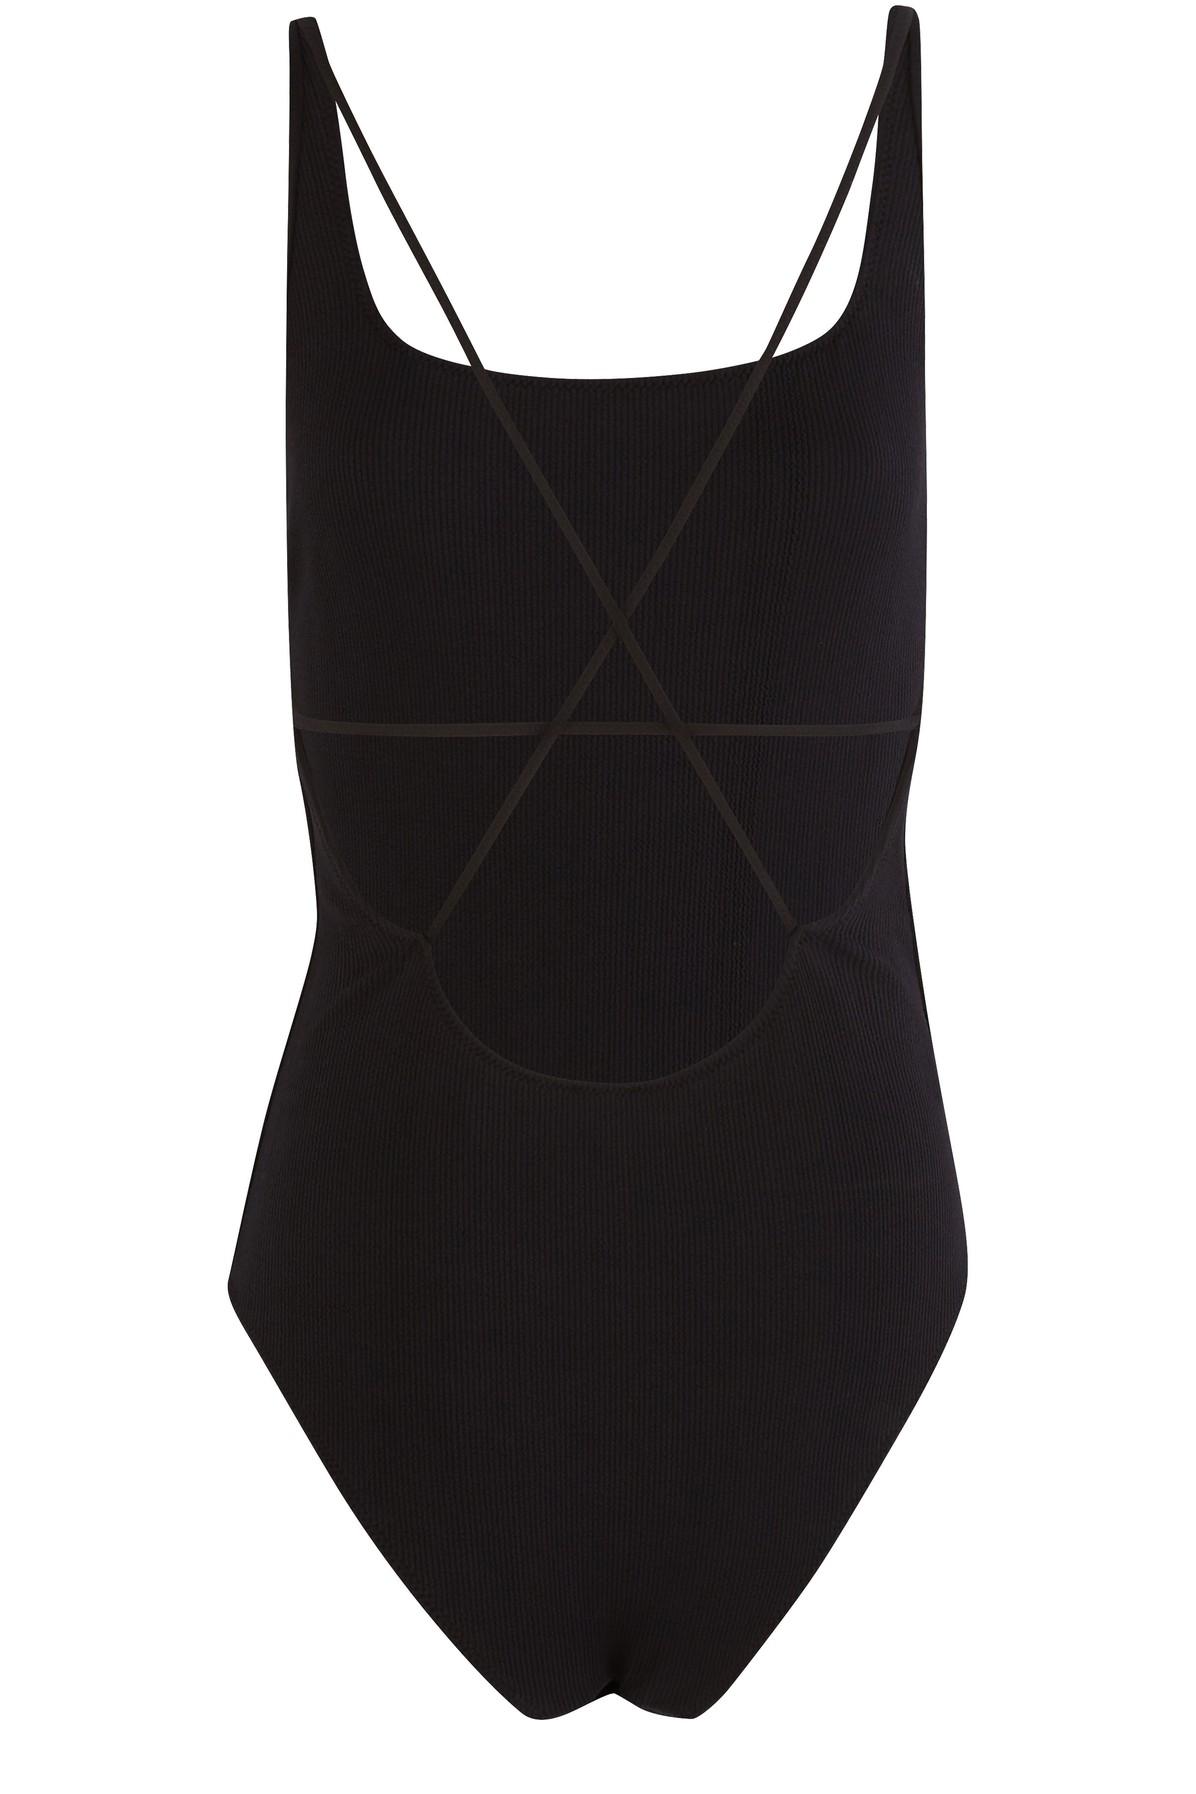 Ganni Synthetic Seersucker Swimsuit in Black - Lyst